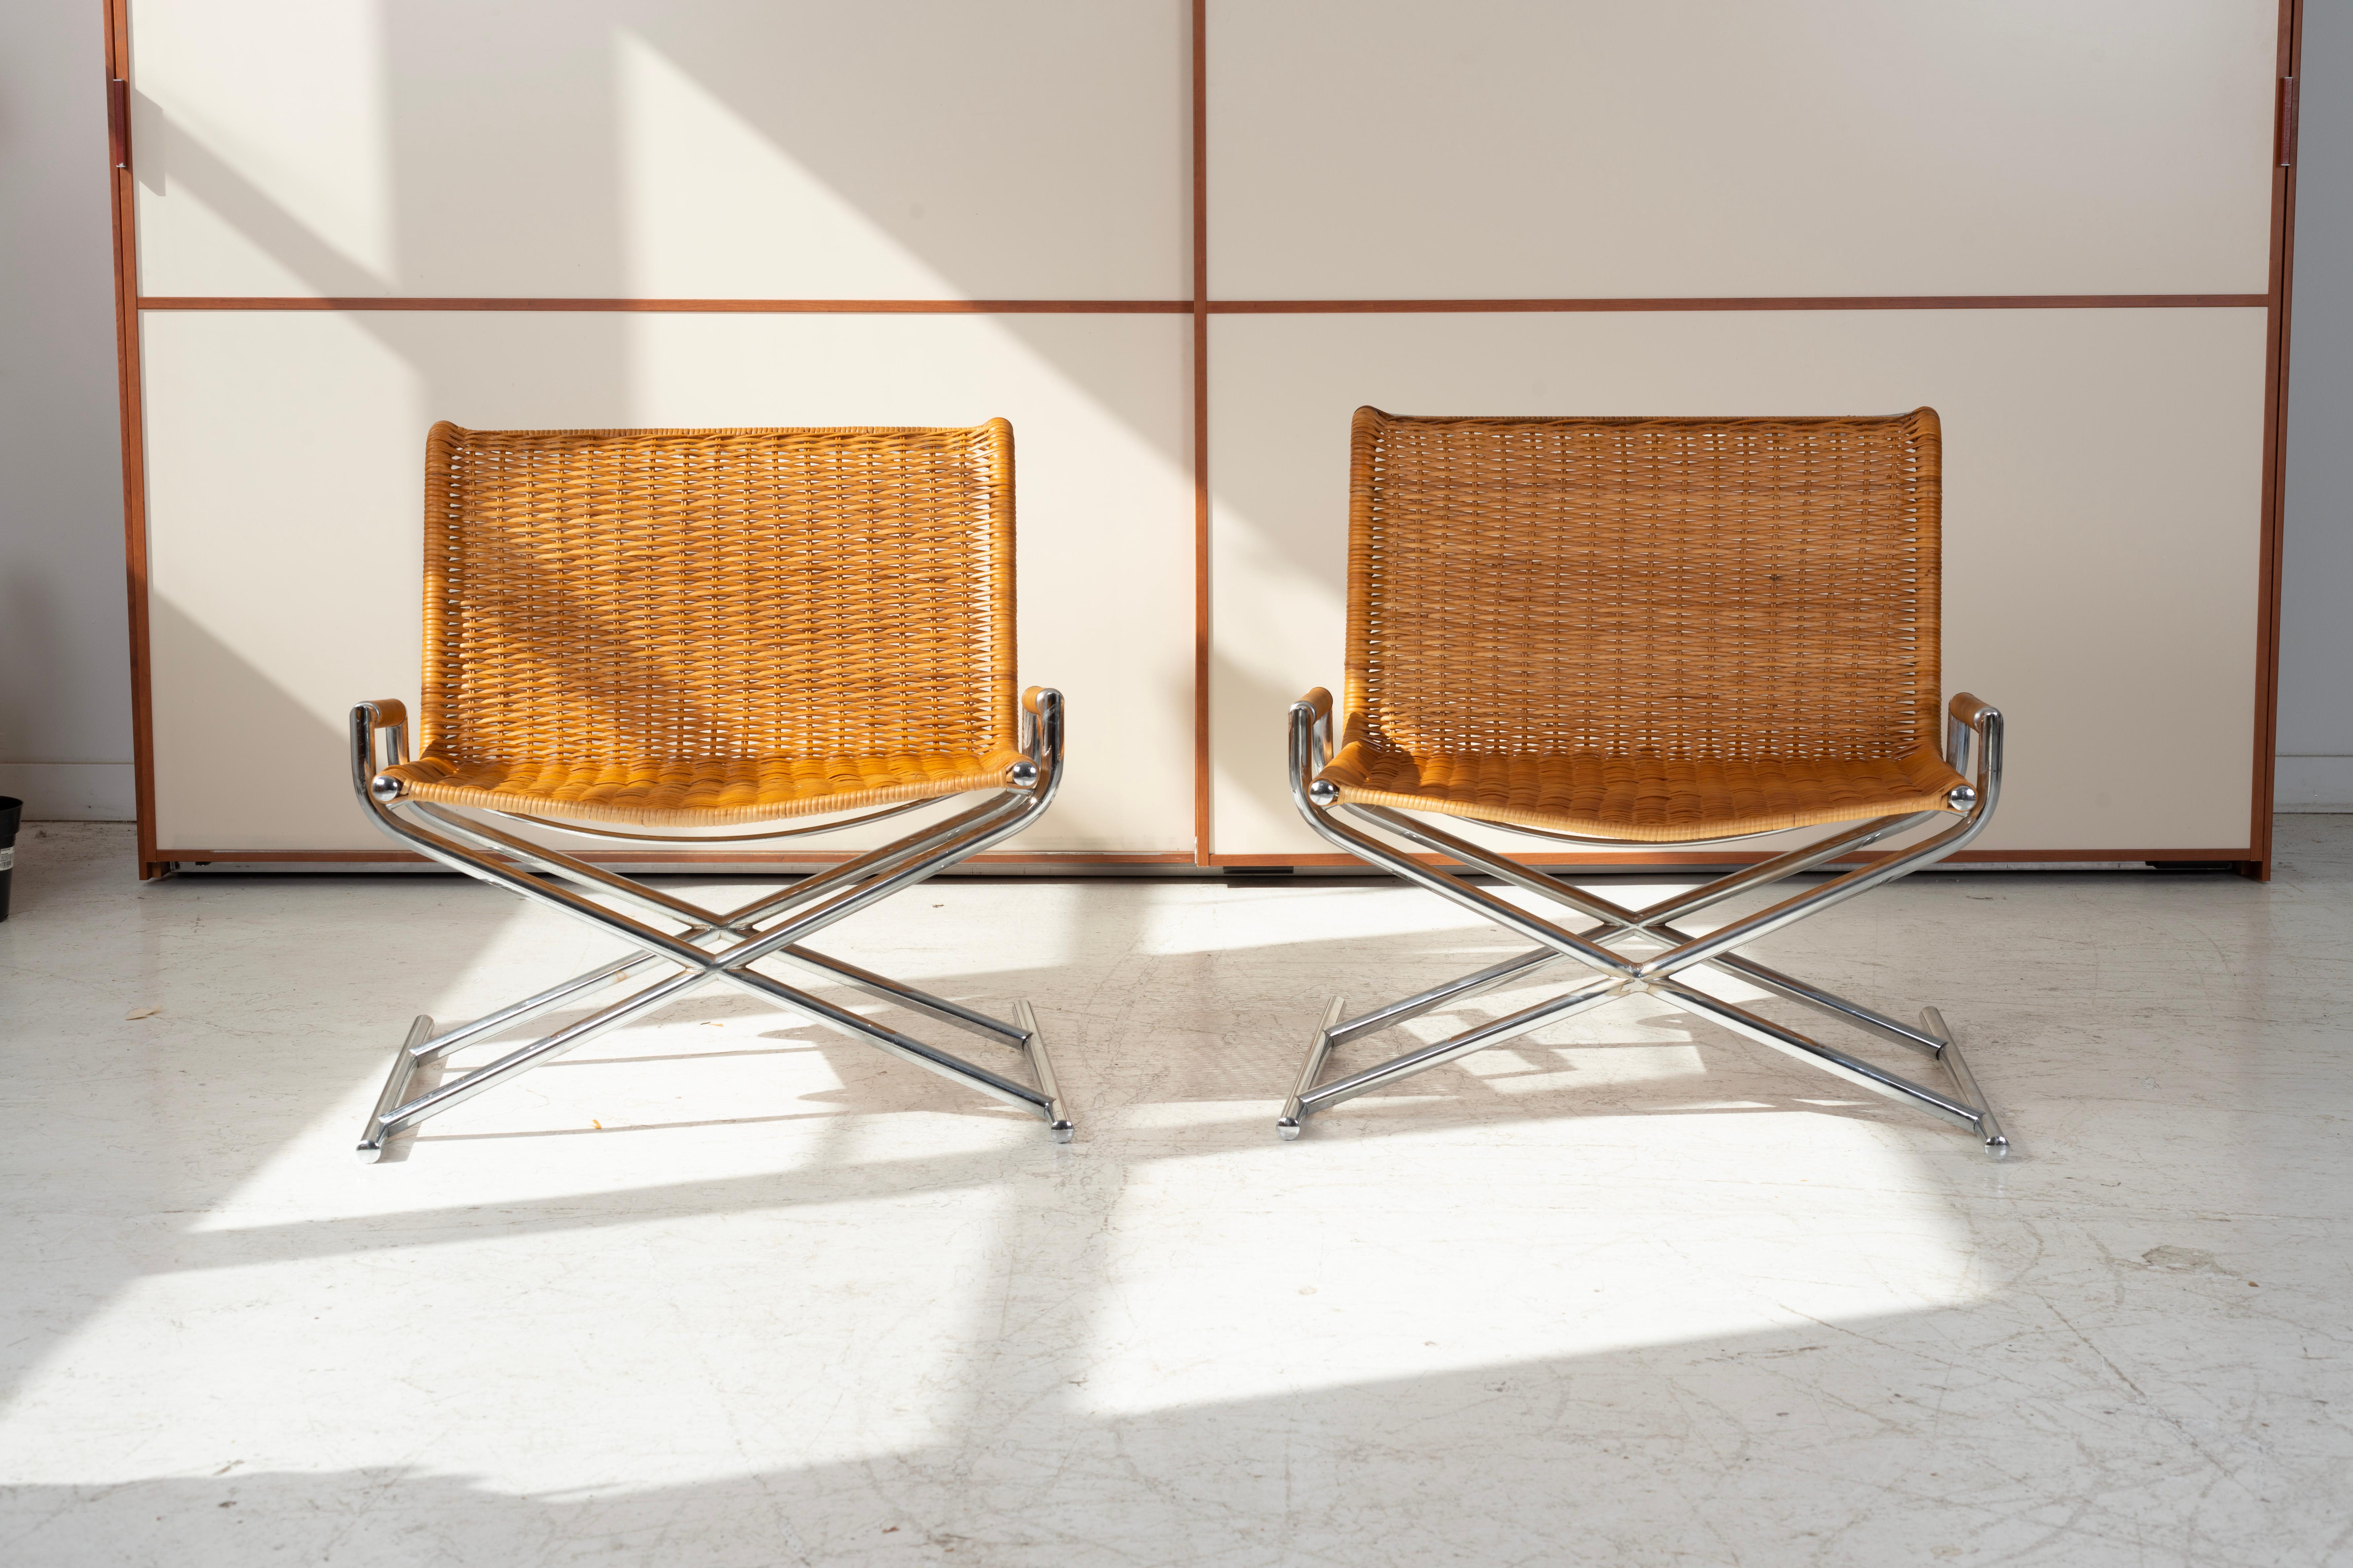 Ces fauteuils de directeur sont un chef-d'œuvre de design intemporel qui allie sans effort la forme et la fonction. Fabriquées vers 1965, ces chaises témoignent de l'attrait durable d'une esthétique minimaliste et d'un savoir-faire innovant.
Chaque